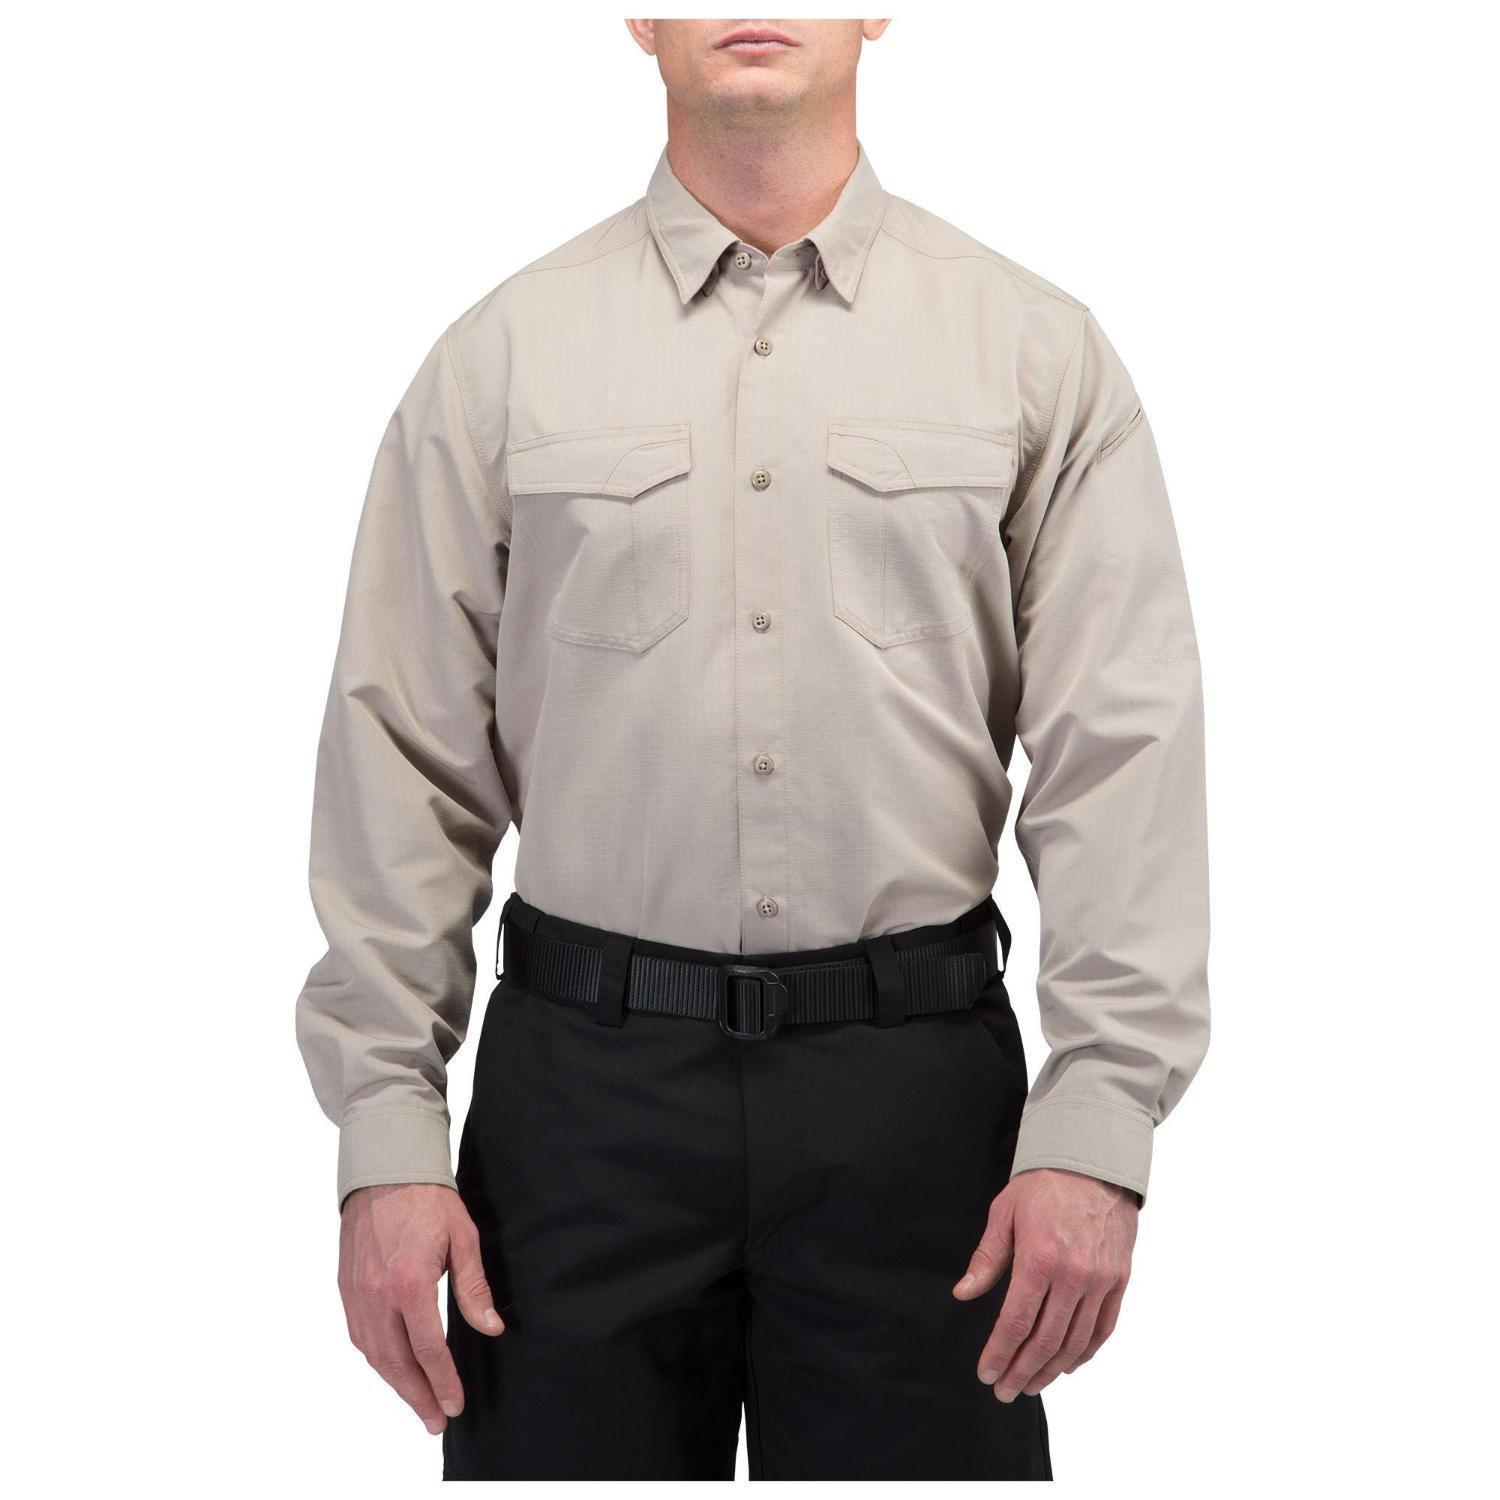 5.11 Fast-Tac Long Sleeve Shirt (Jackor & Tröjor) från 5.11 Tactical. KhakiS | TacNGear - Utrustning för polis och militär och outdoor.